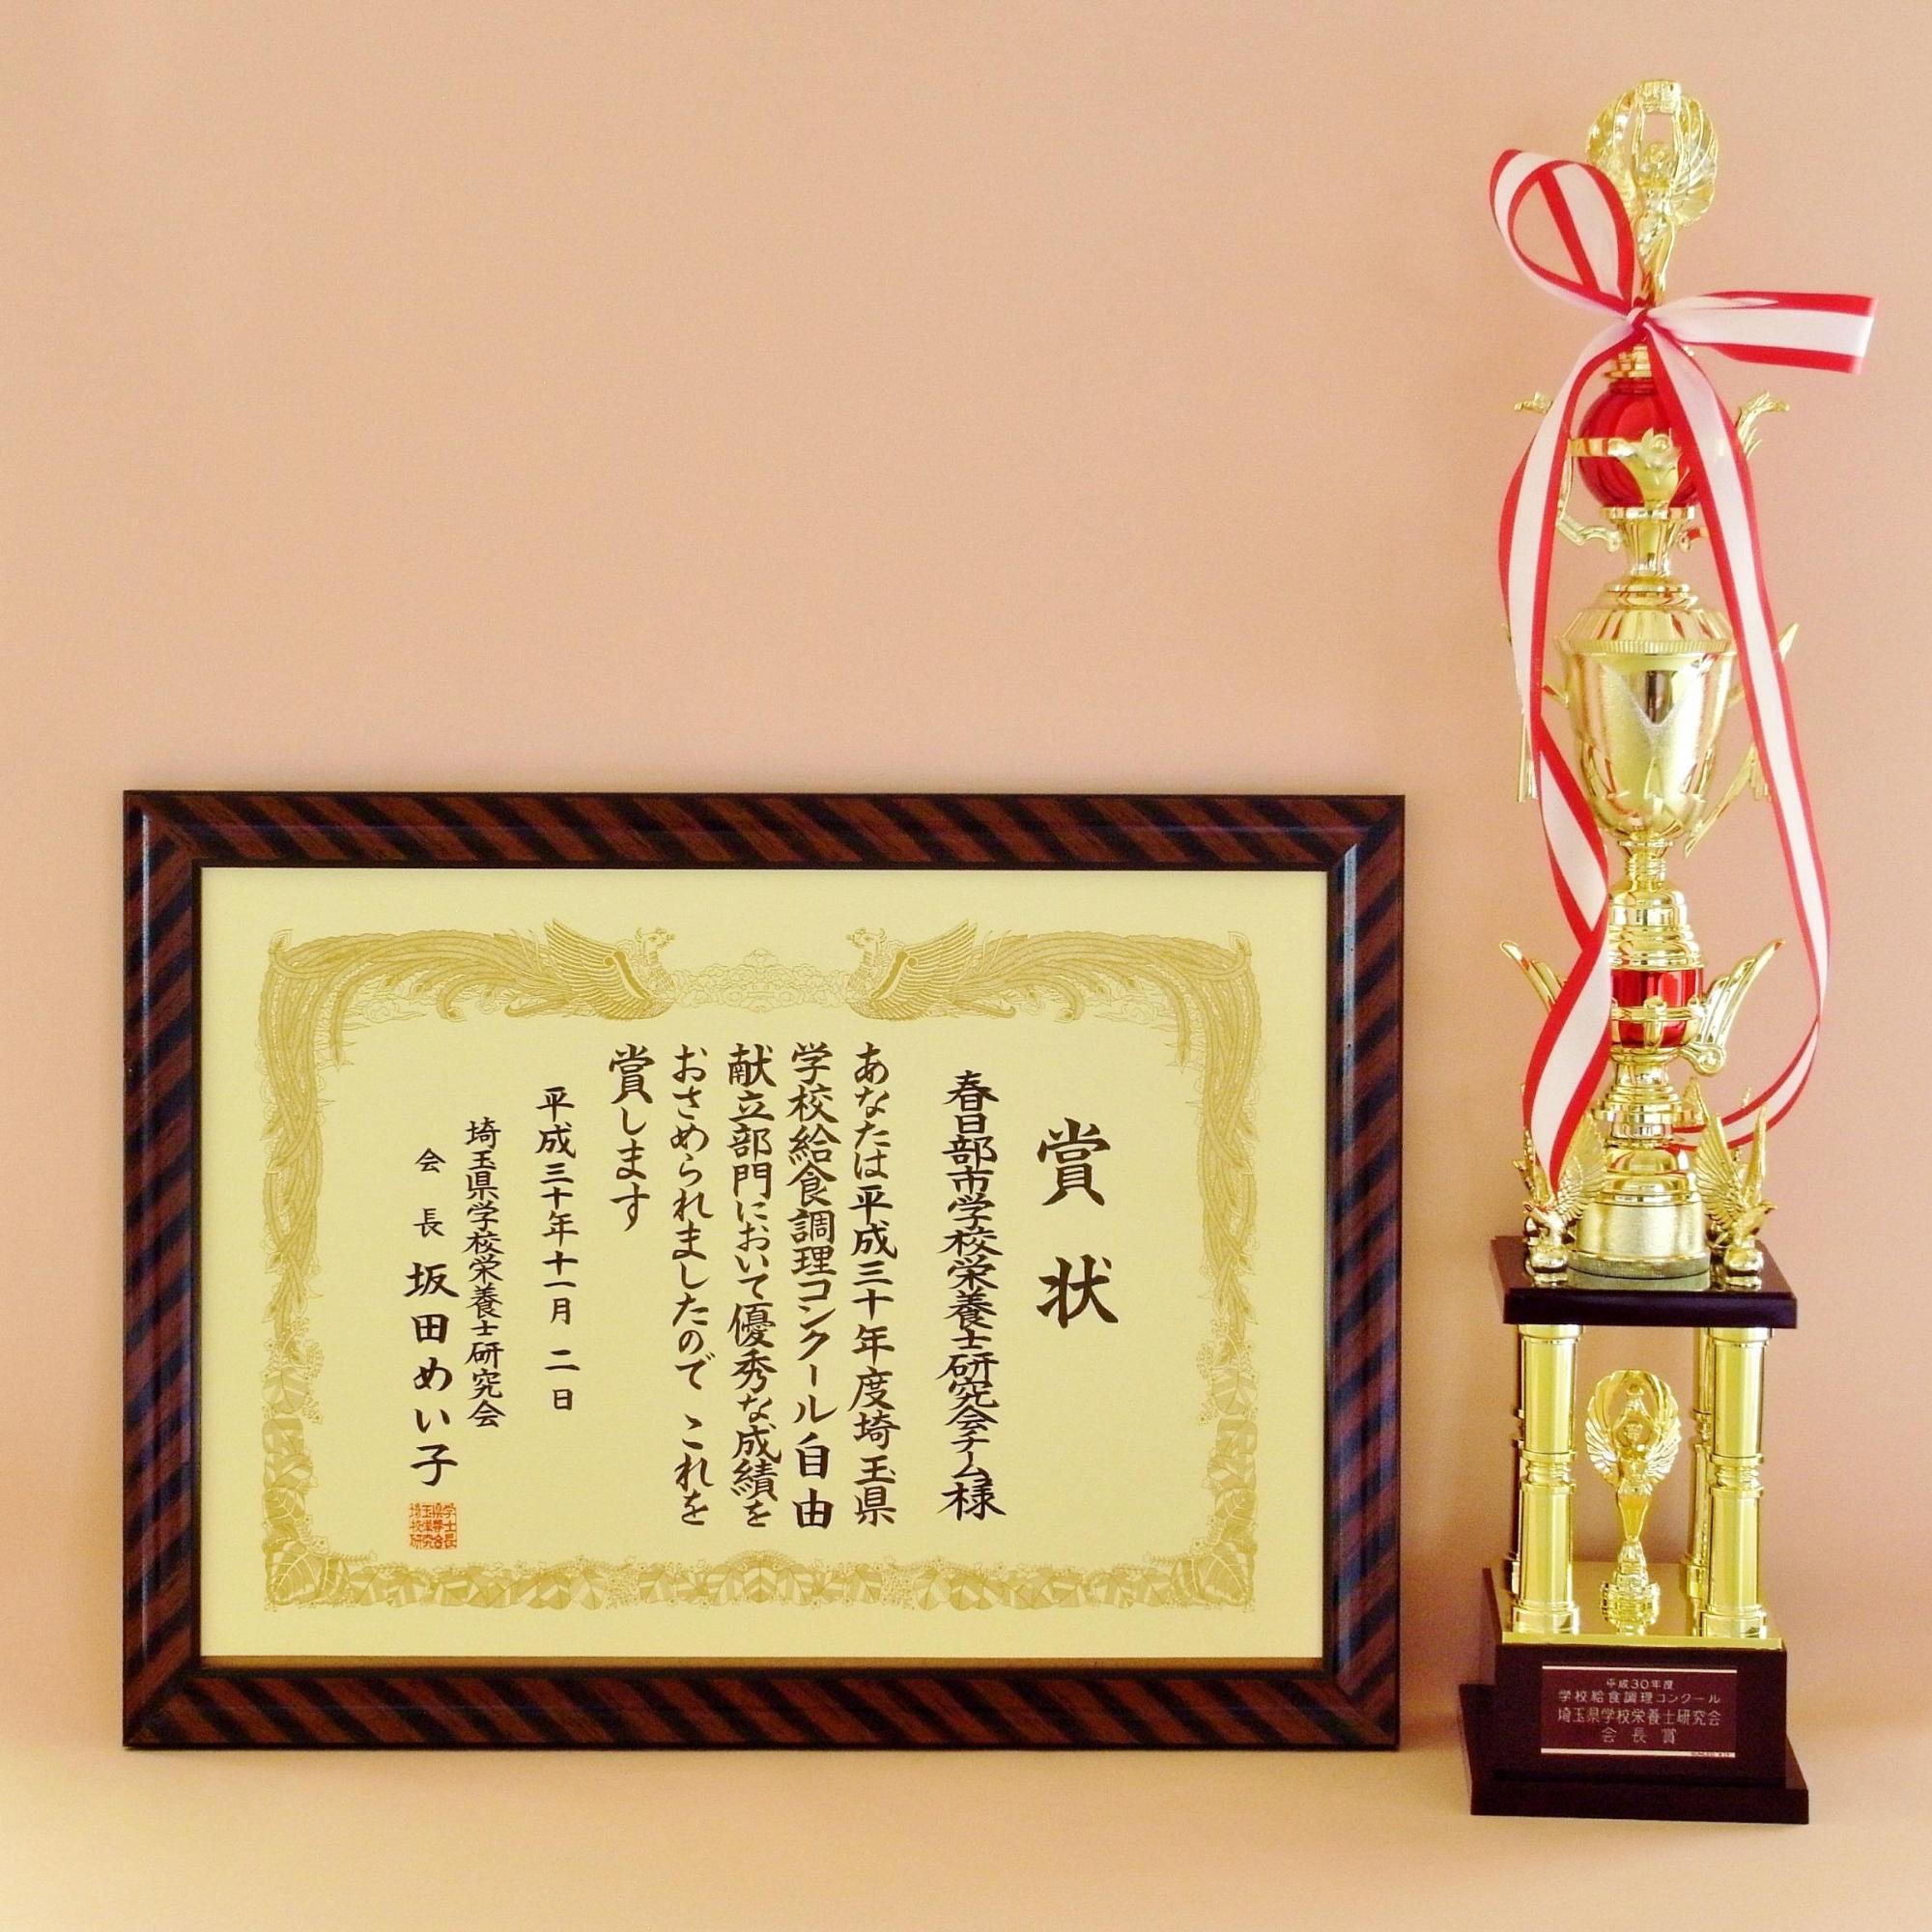 平成30年度受賞のトロフィーと、額に入った賞状の写真